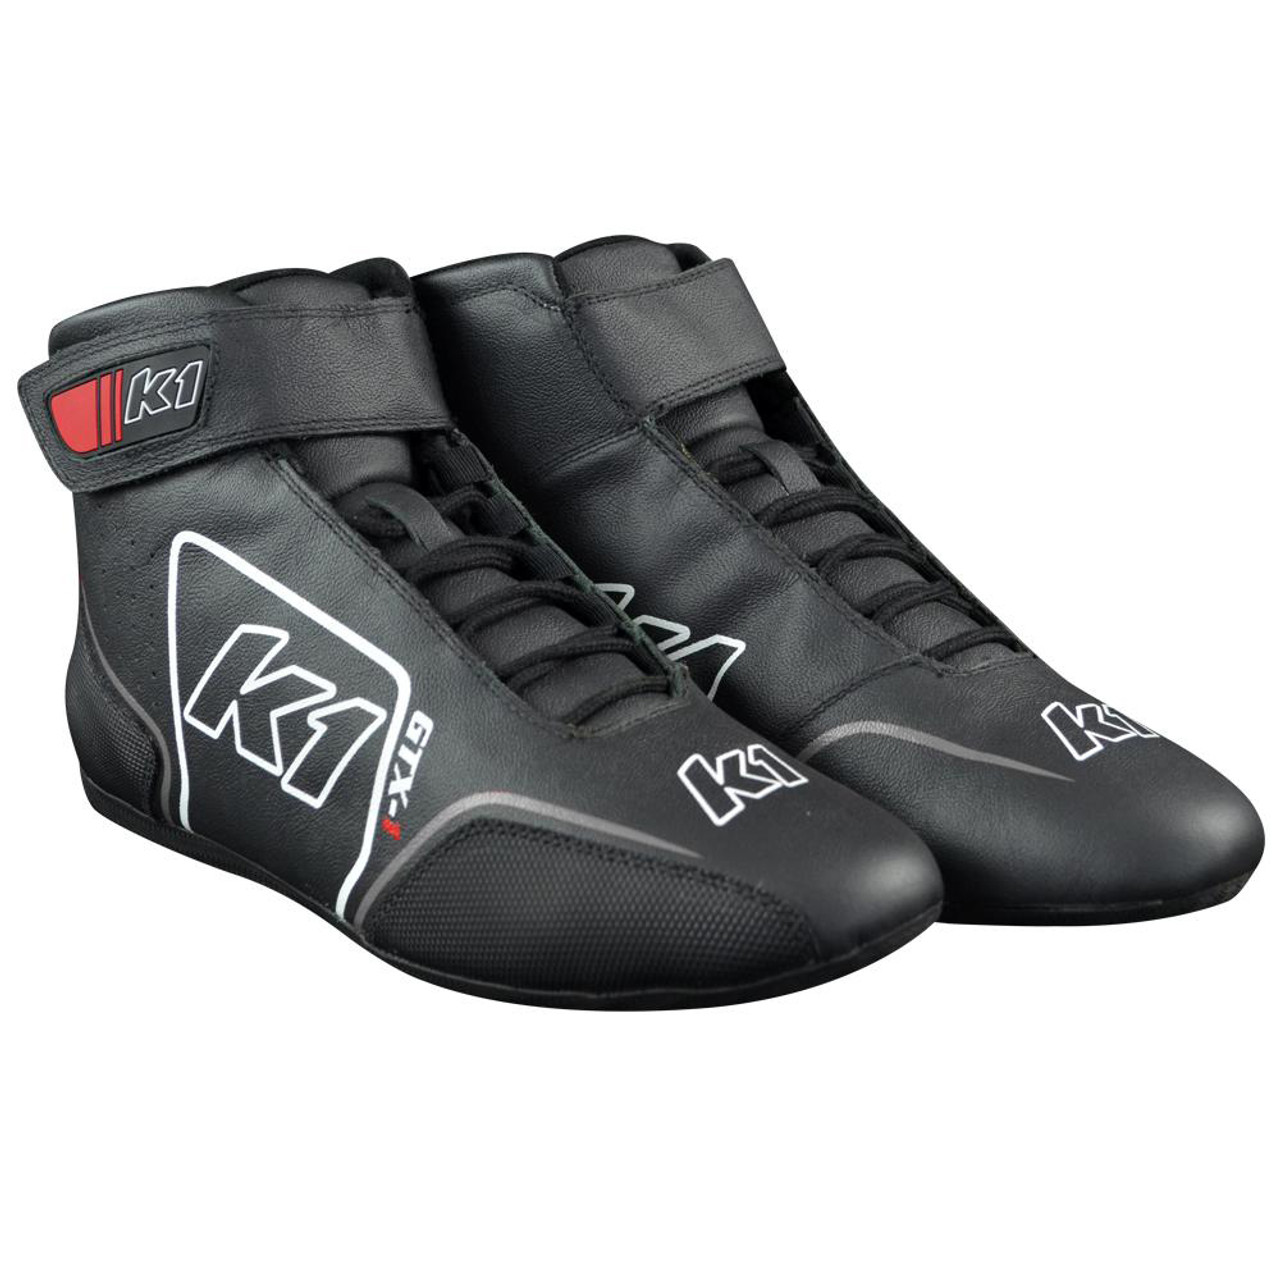 Shoe GTX-1 Black / Grey Size 6.5